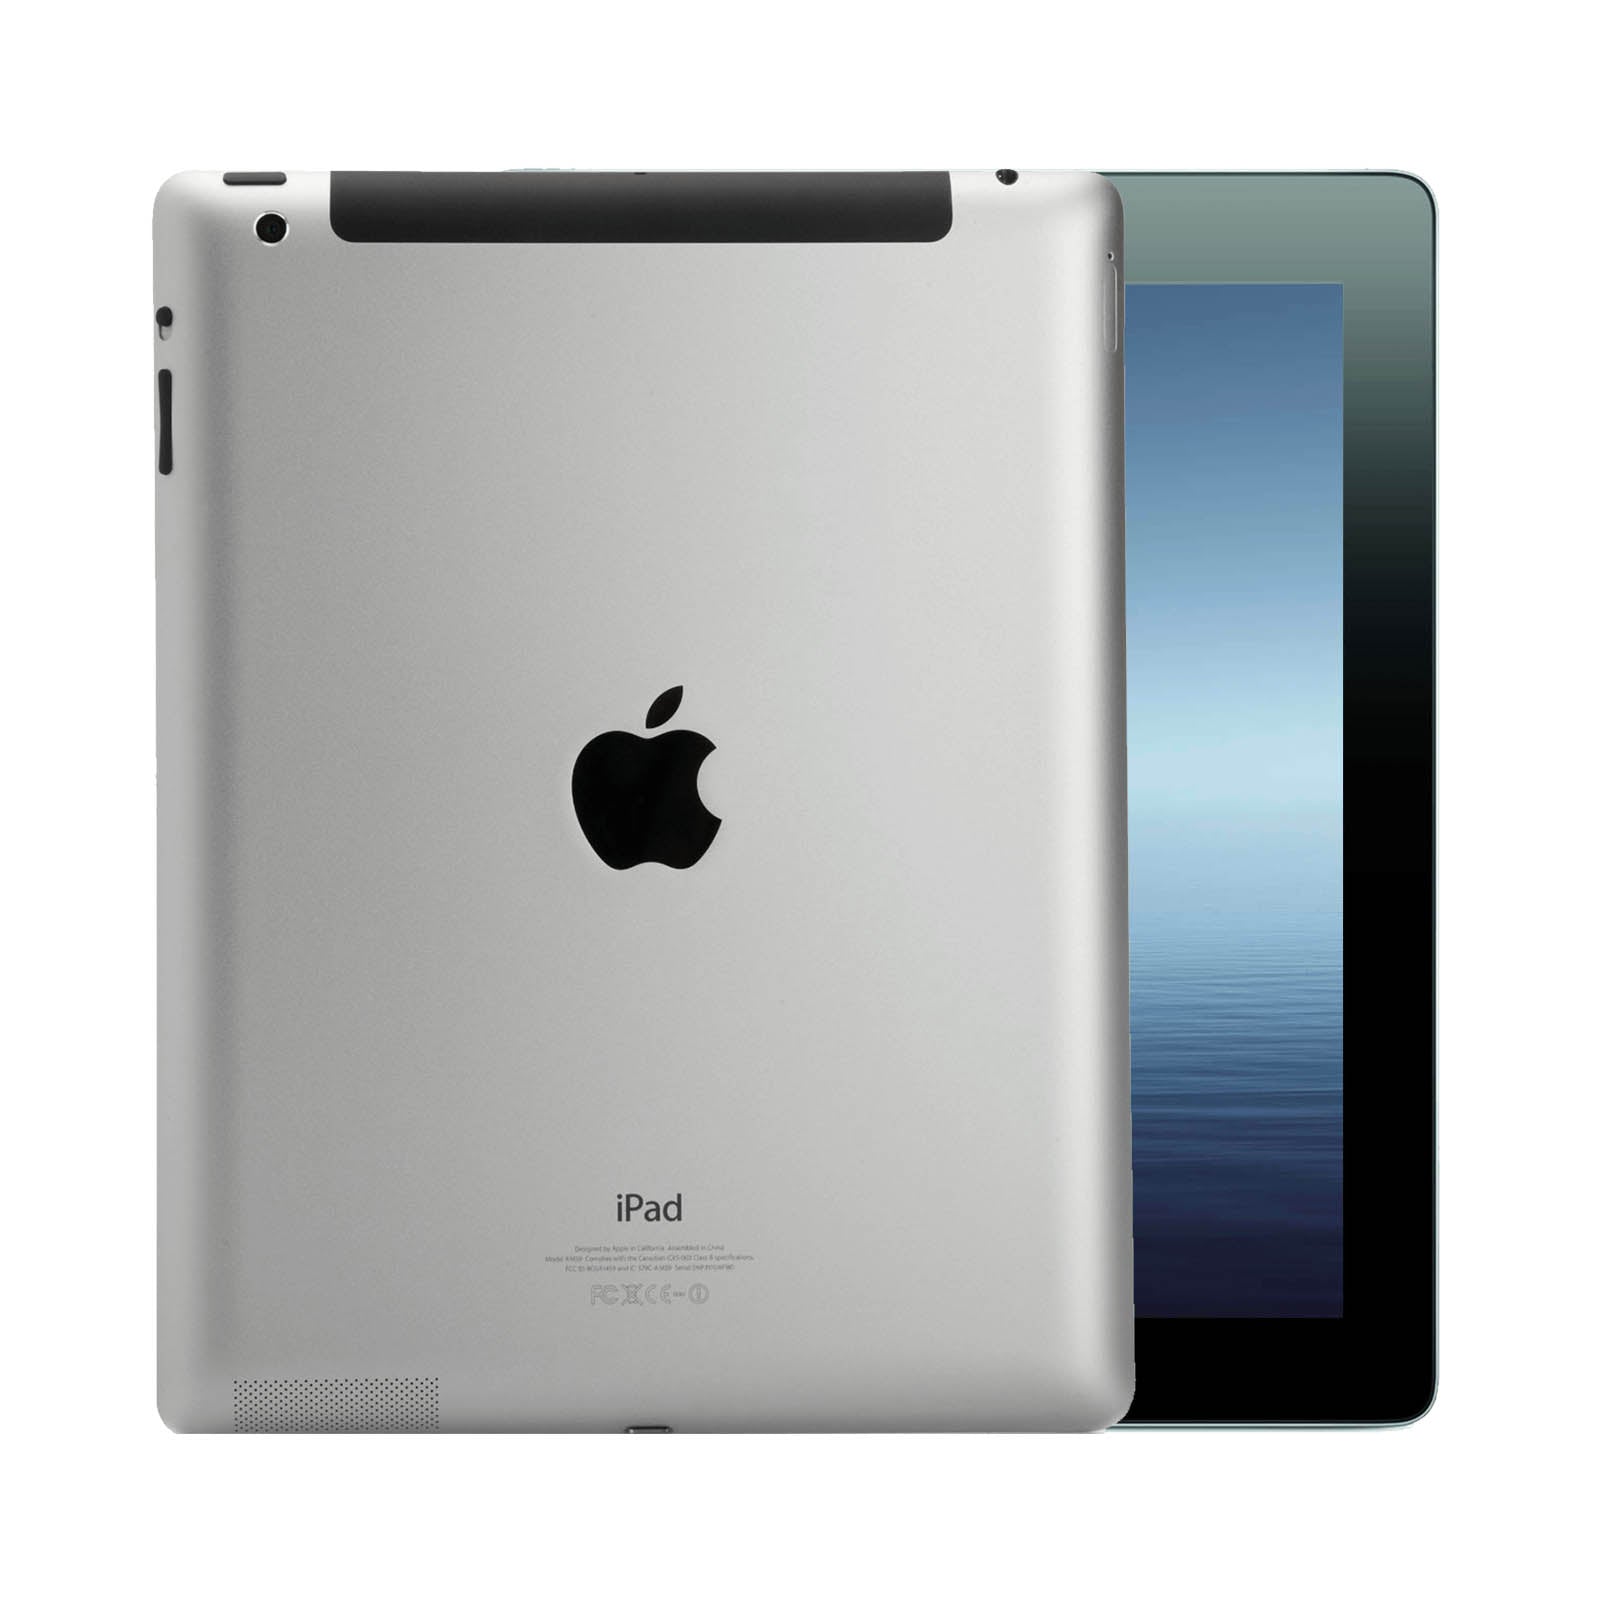 Apple iPad 3 64GB Black Very Good - Unlocked